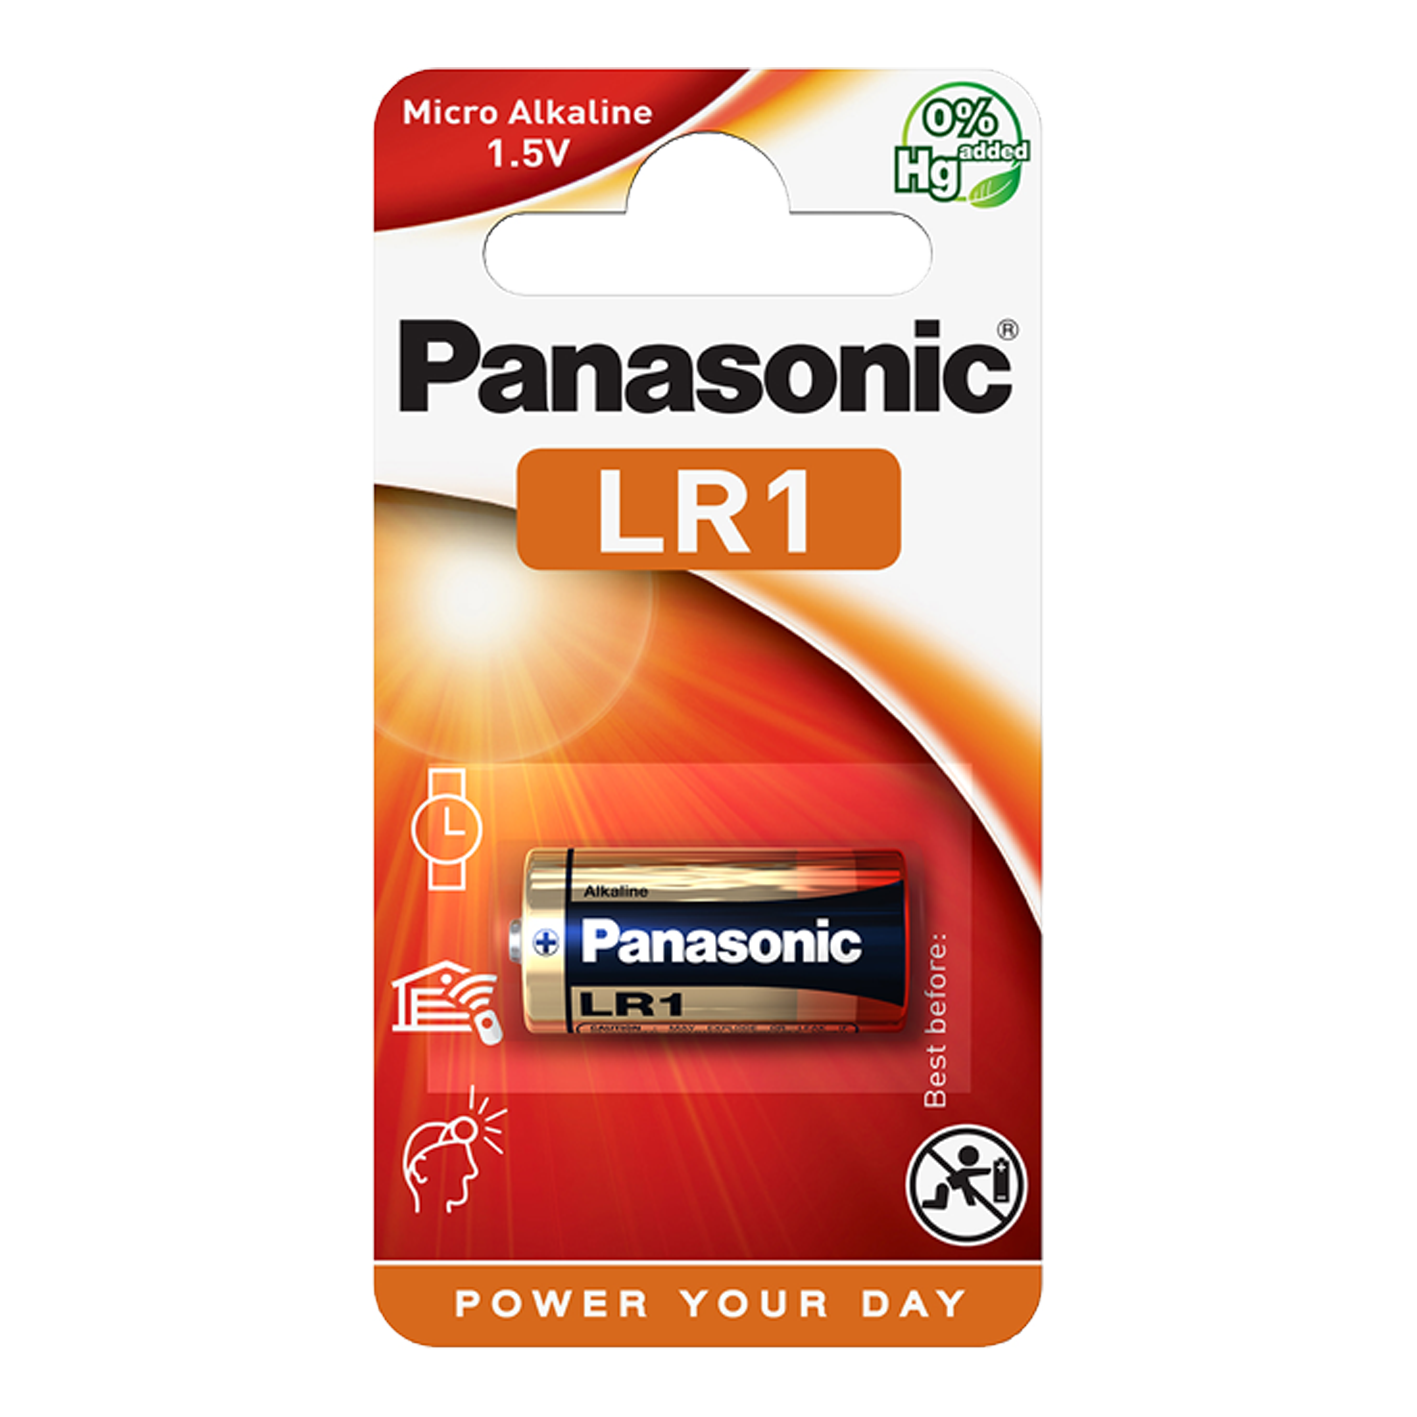 Panasonic LR1 1,5 V celda de alimentación, paquete de 1